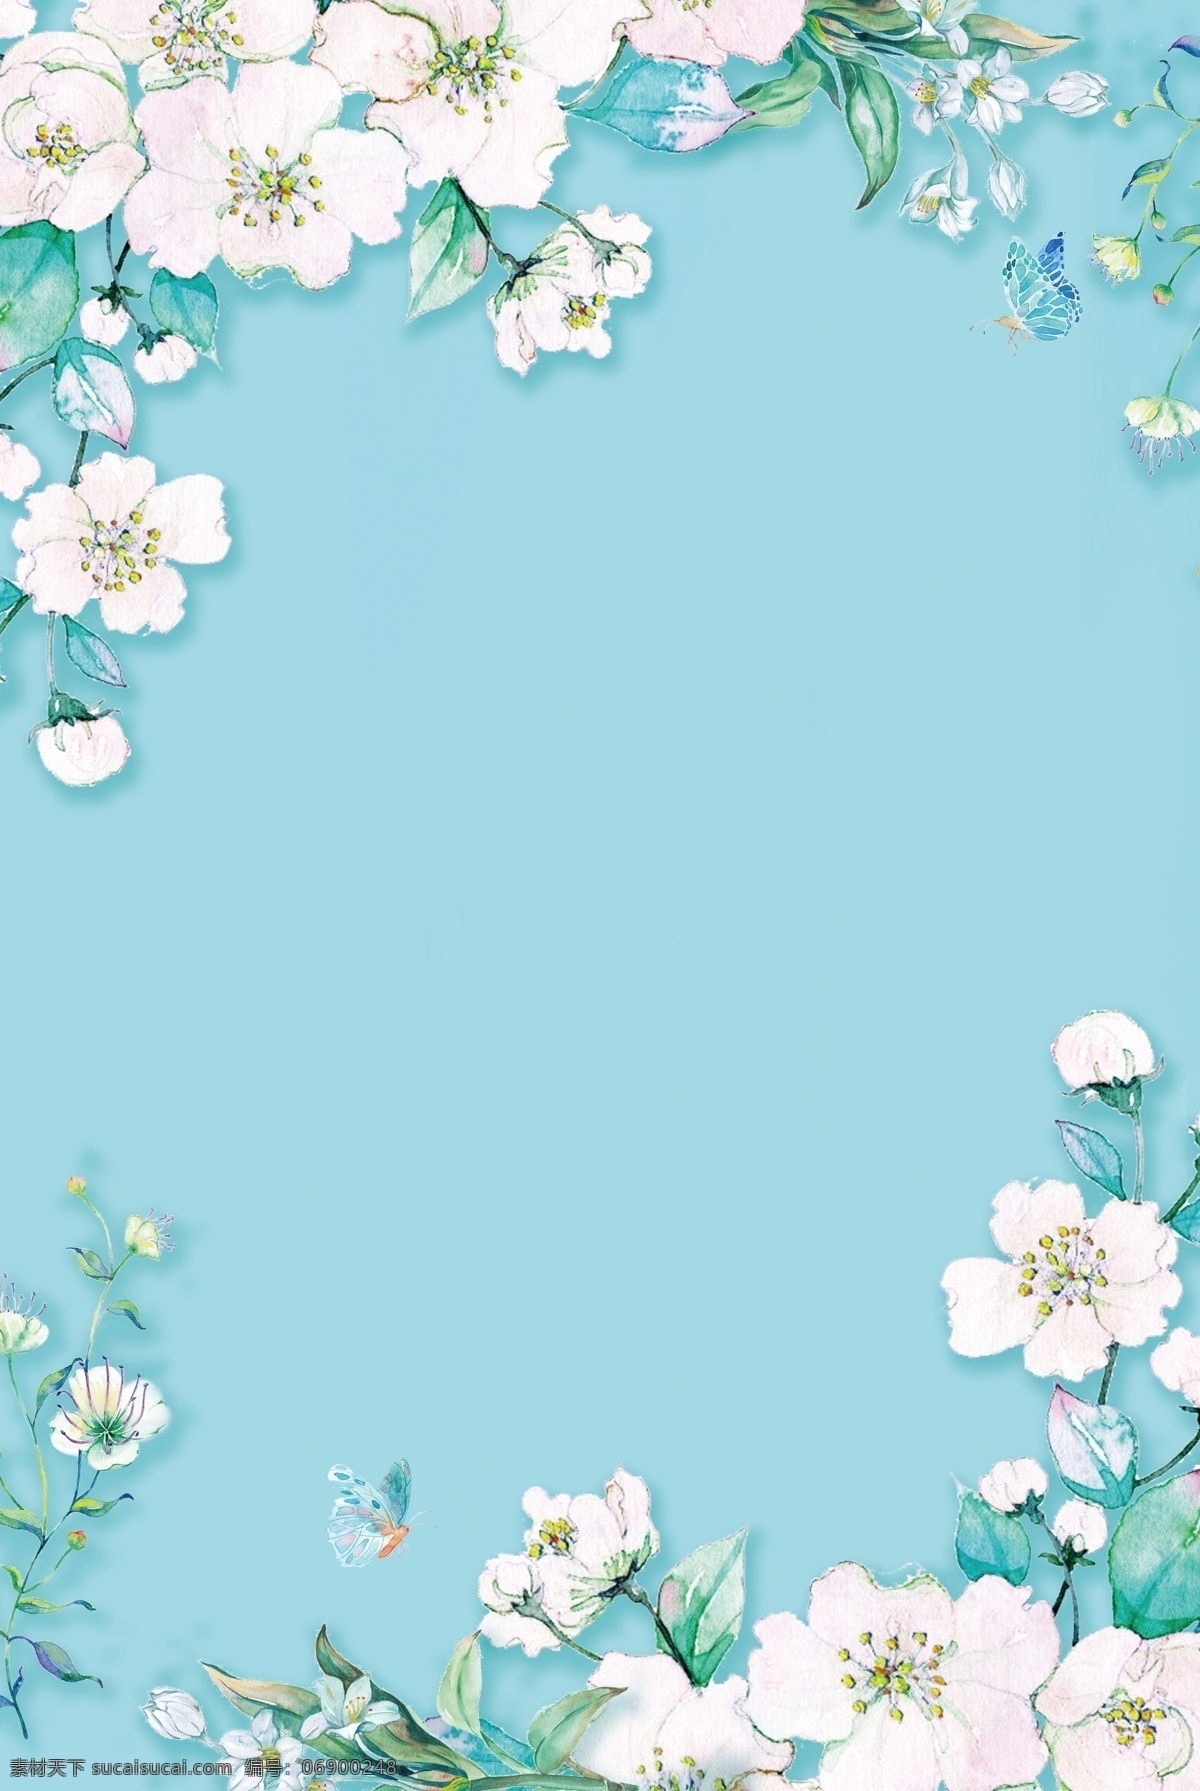 高清 蓝 底 白花 水彩 手绘 分层 复古 花卉 鲜花 psd分层 绿叶 叶子 白色花 背景 蓝色 蝴蝶 边框 底纹 花纹 背景素材